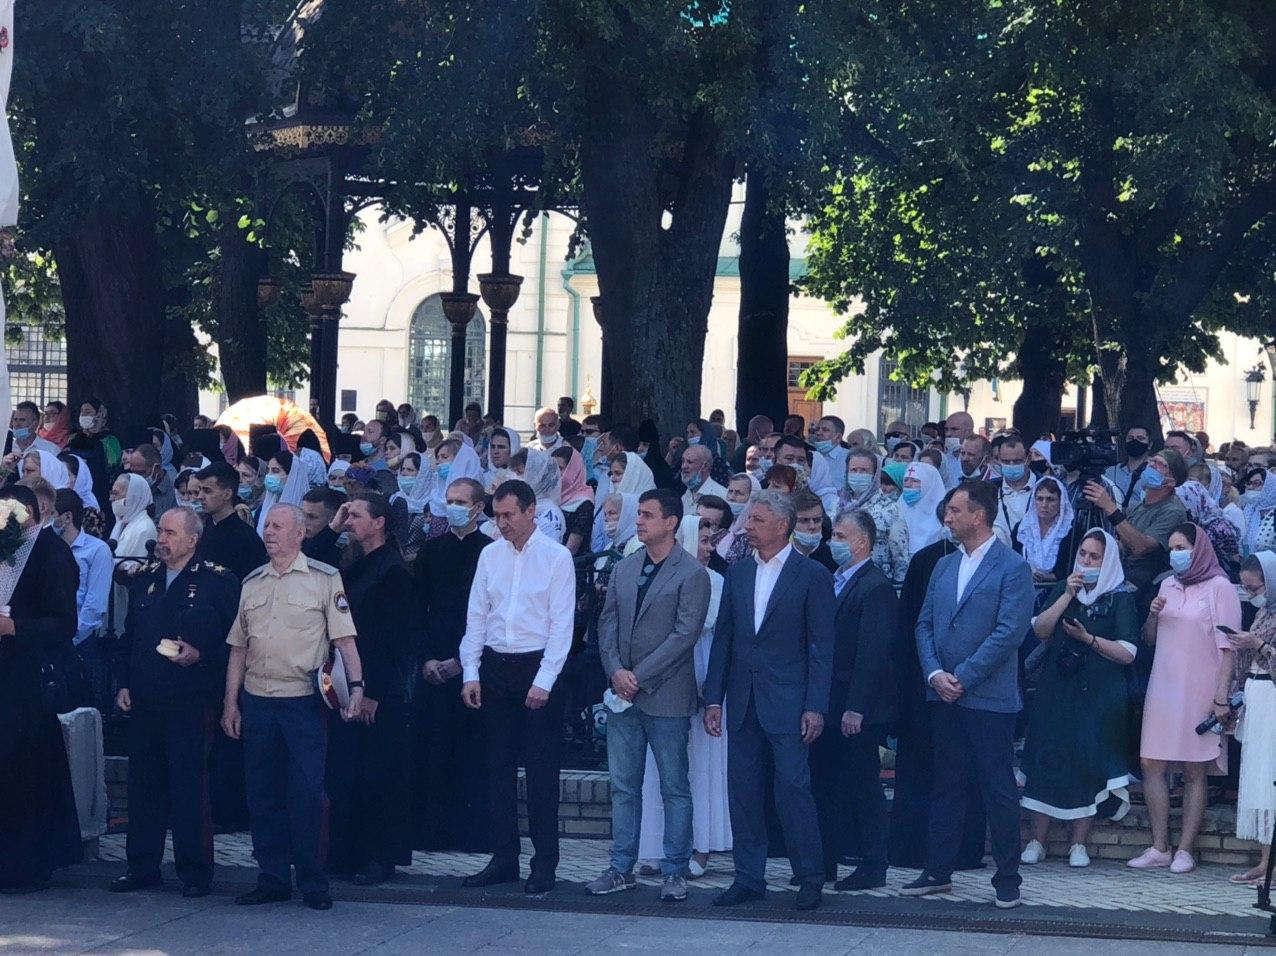 УПЦ проводит Божественную литургию в честь Дня крещения Руси